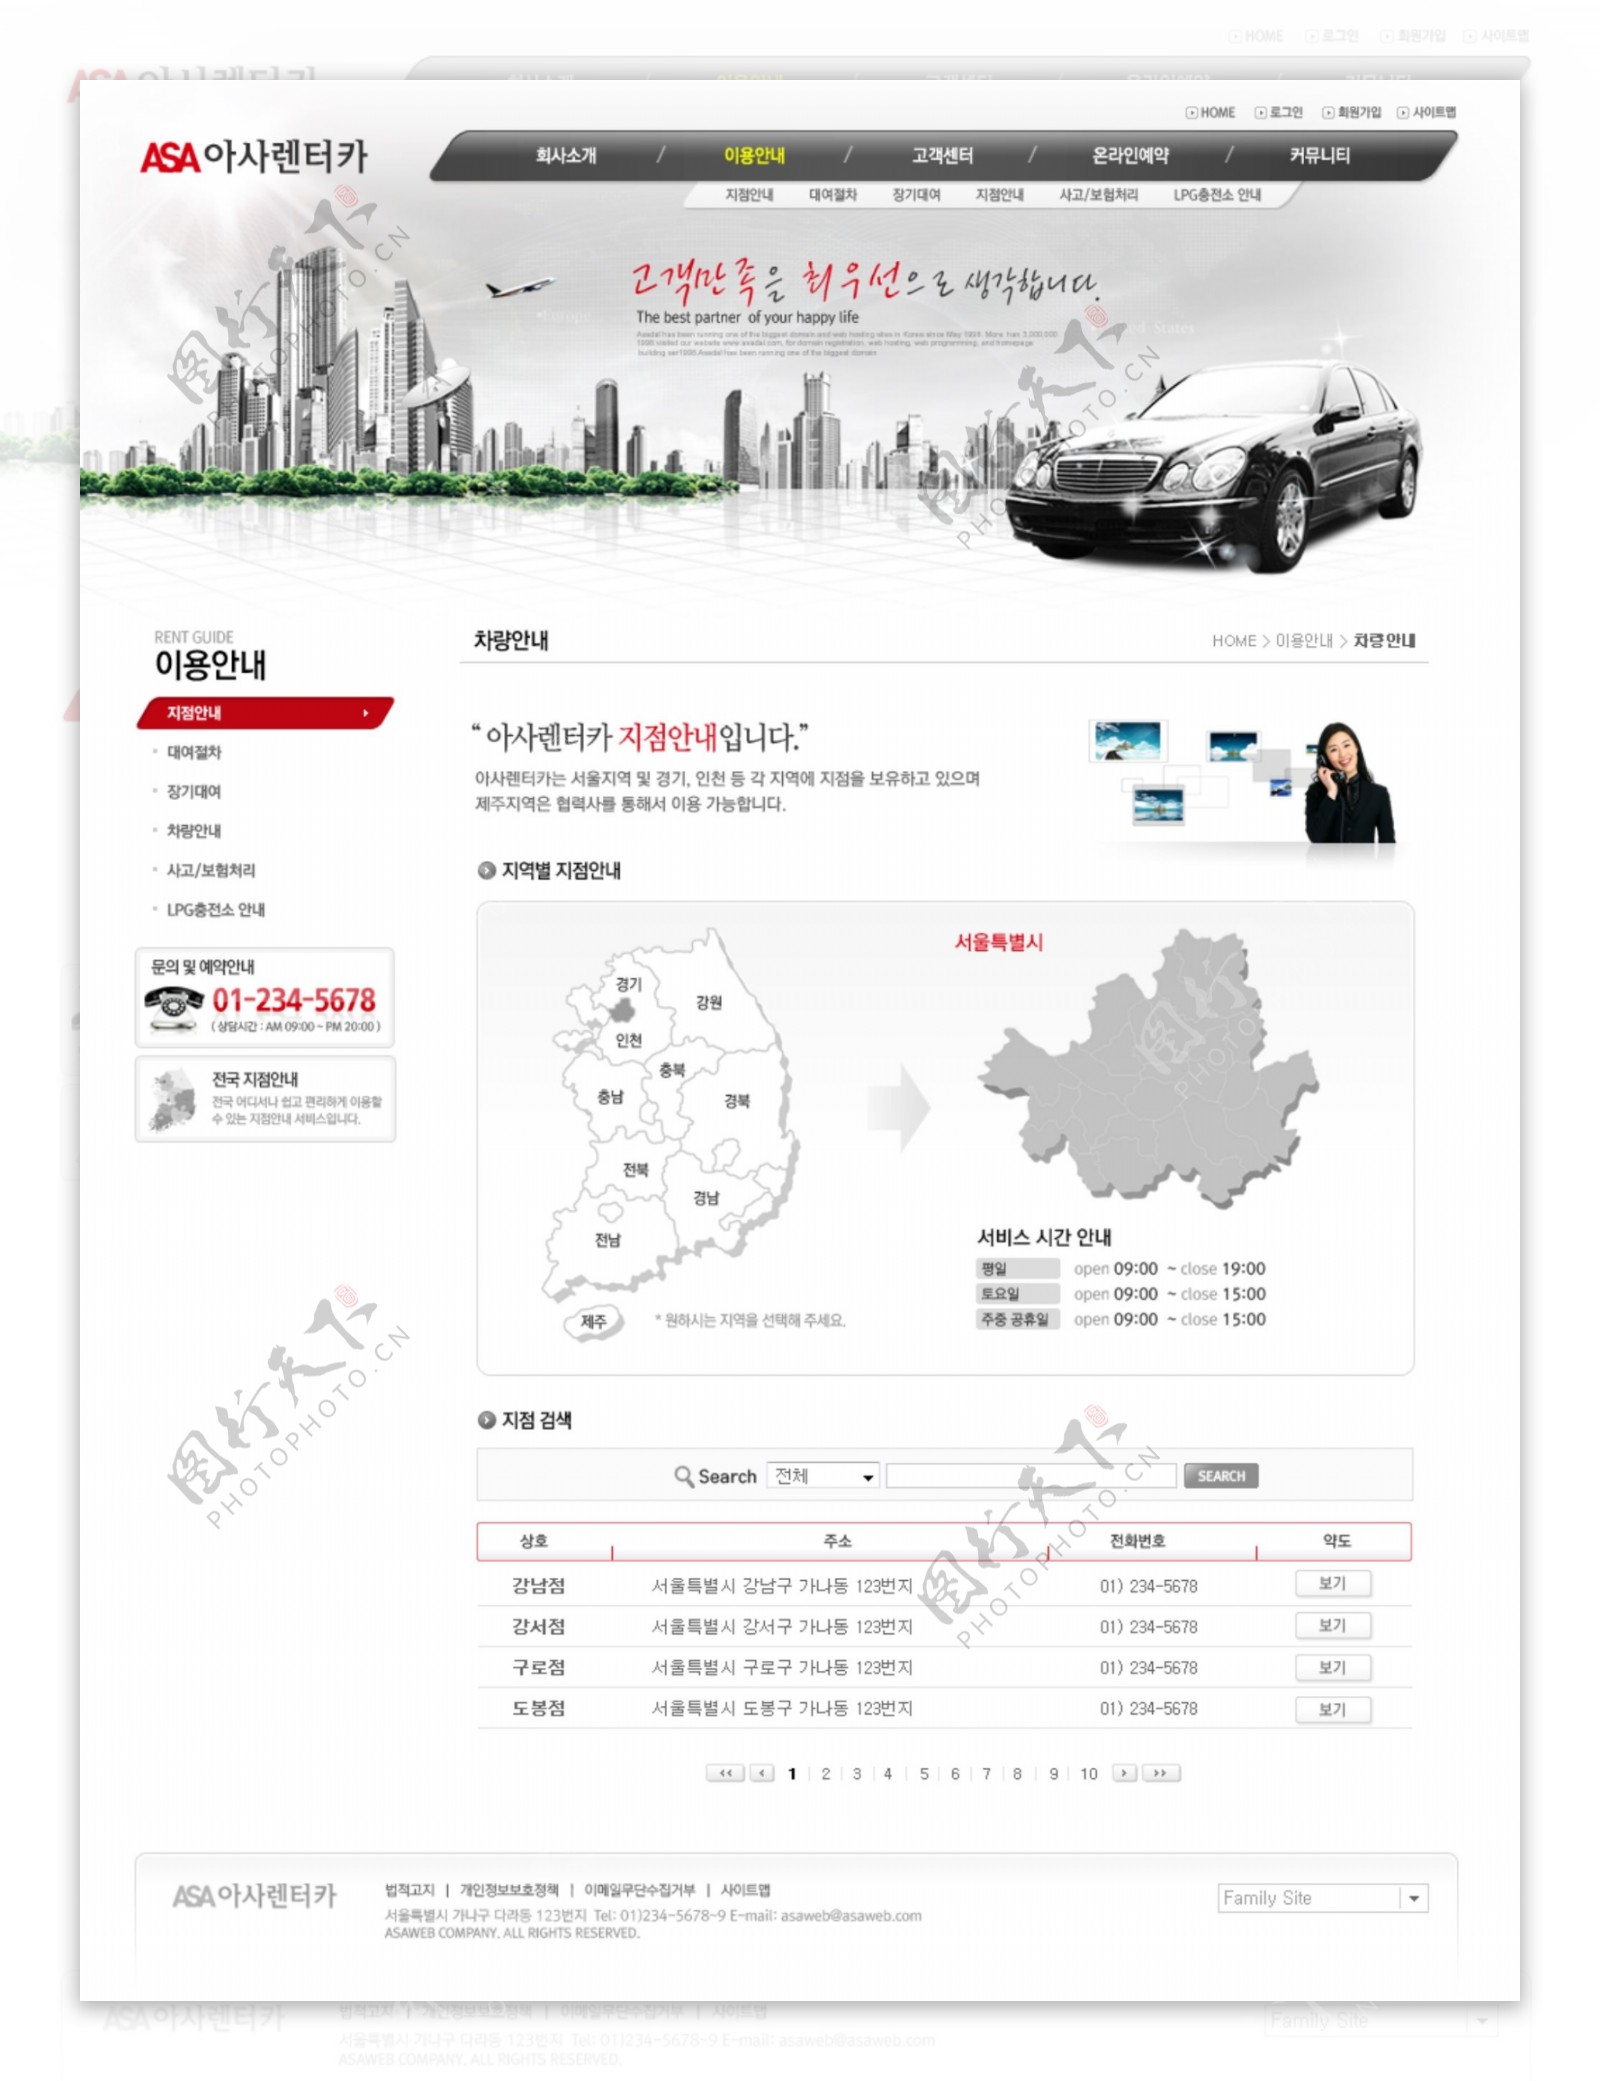 汽车销售公司网页设计图片